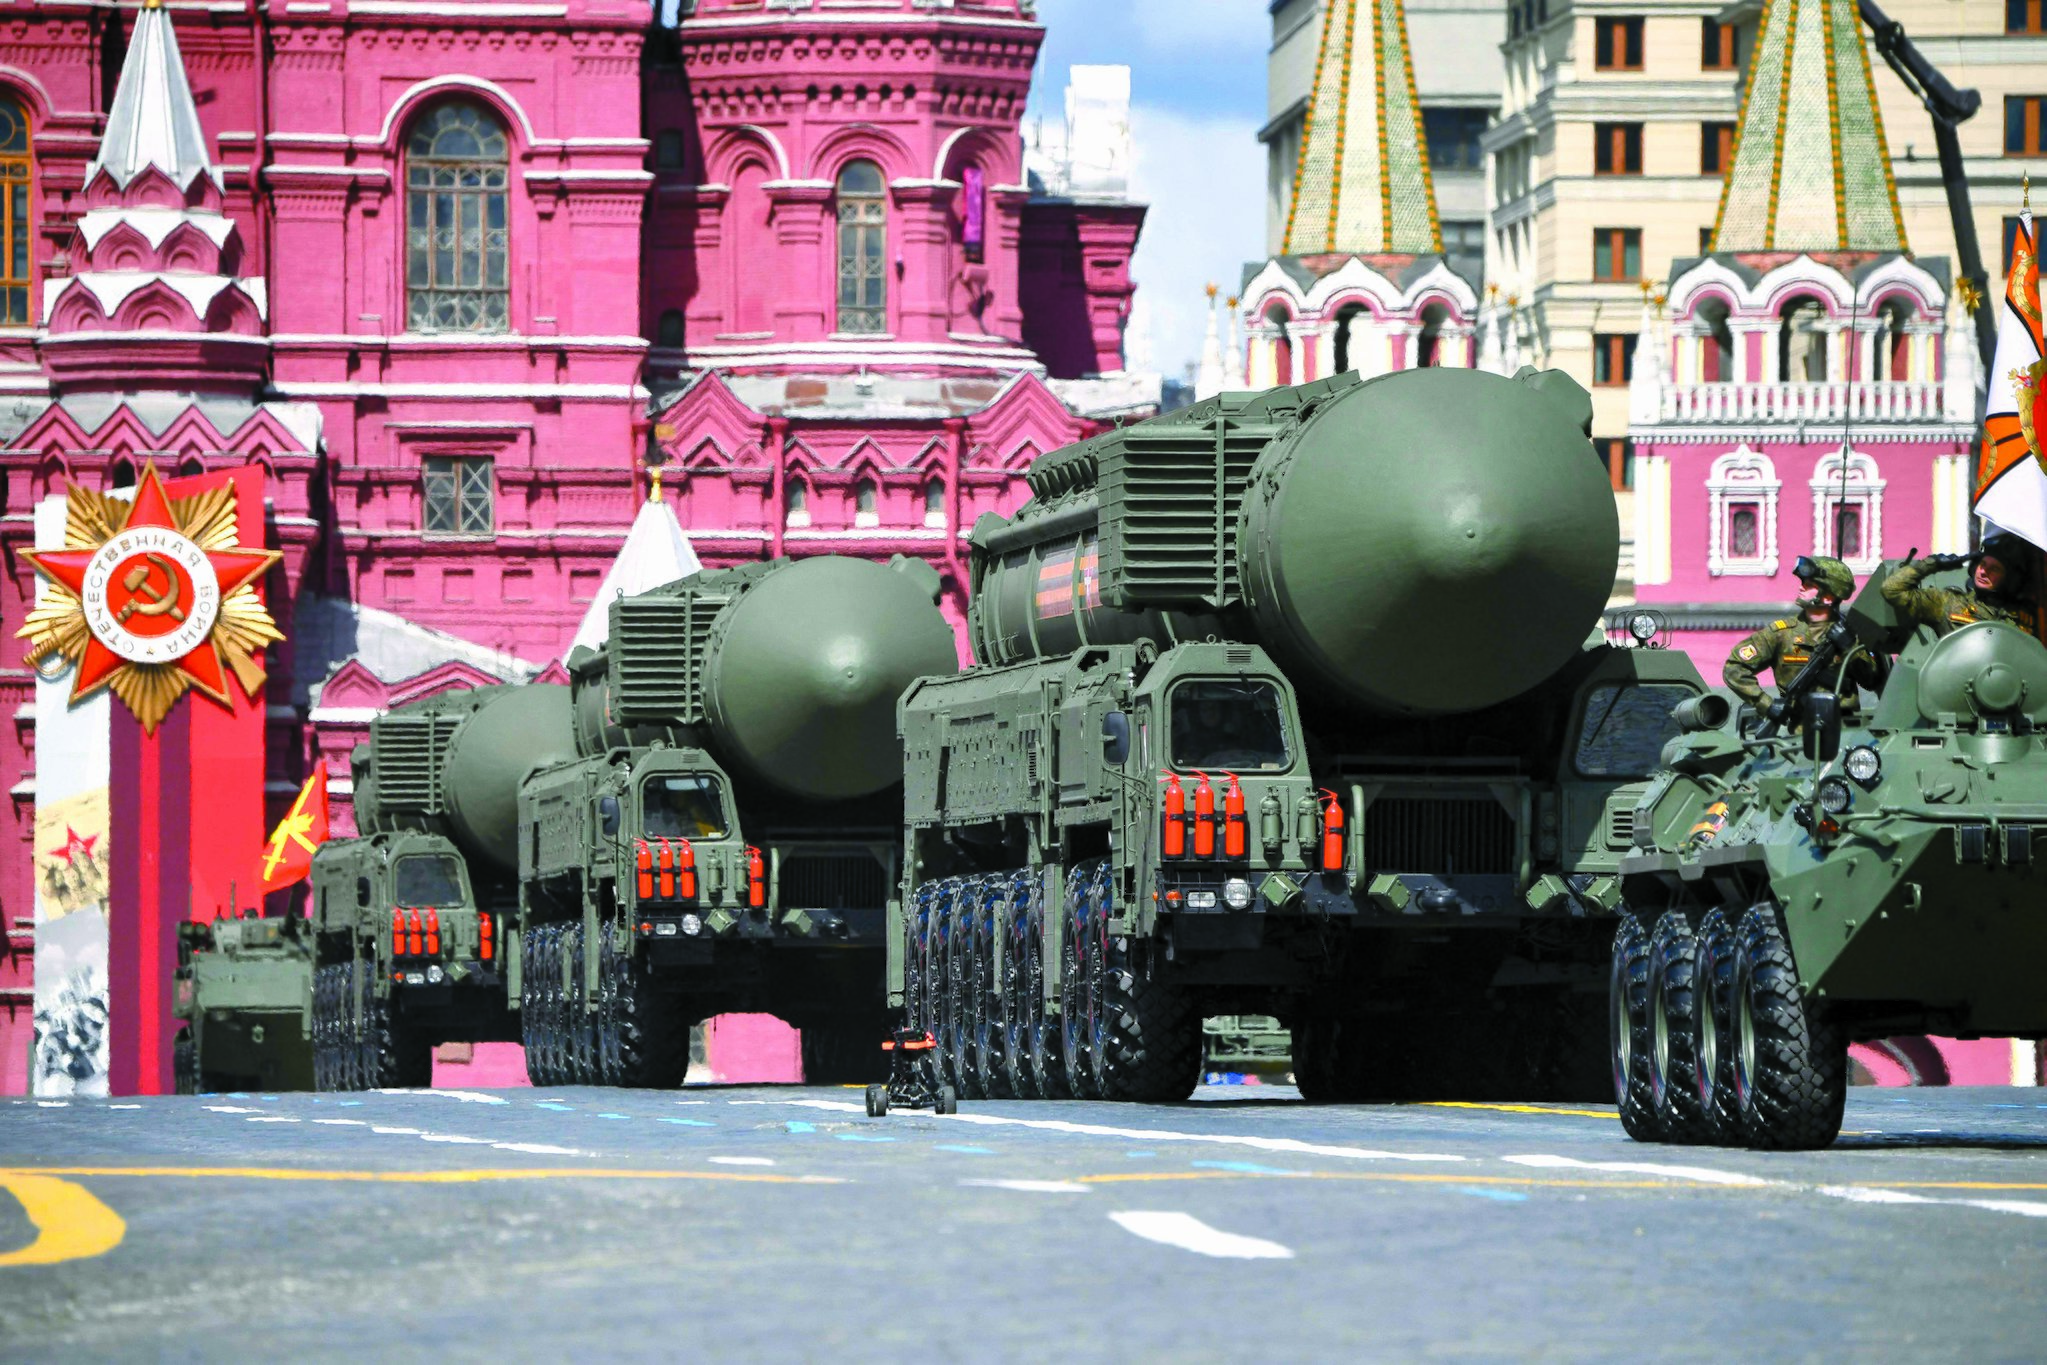 9일 러시아 모스크바에서 열린 제2차 세계대전 전승절 열병식에 야르스 다탄두 대륙간탄도미사일(ICBM)이 등장했다. AFP=연합뉴스